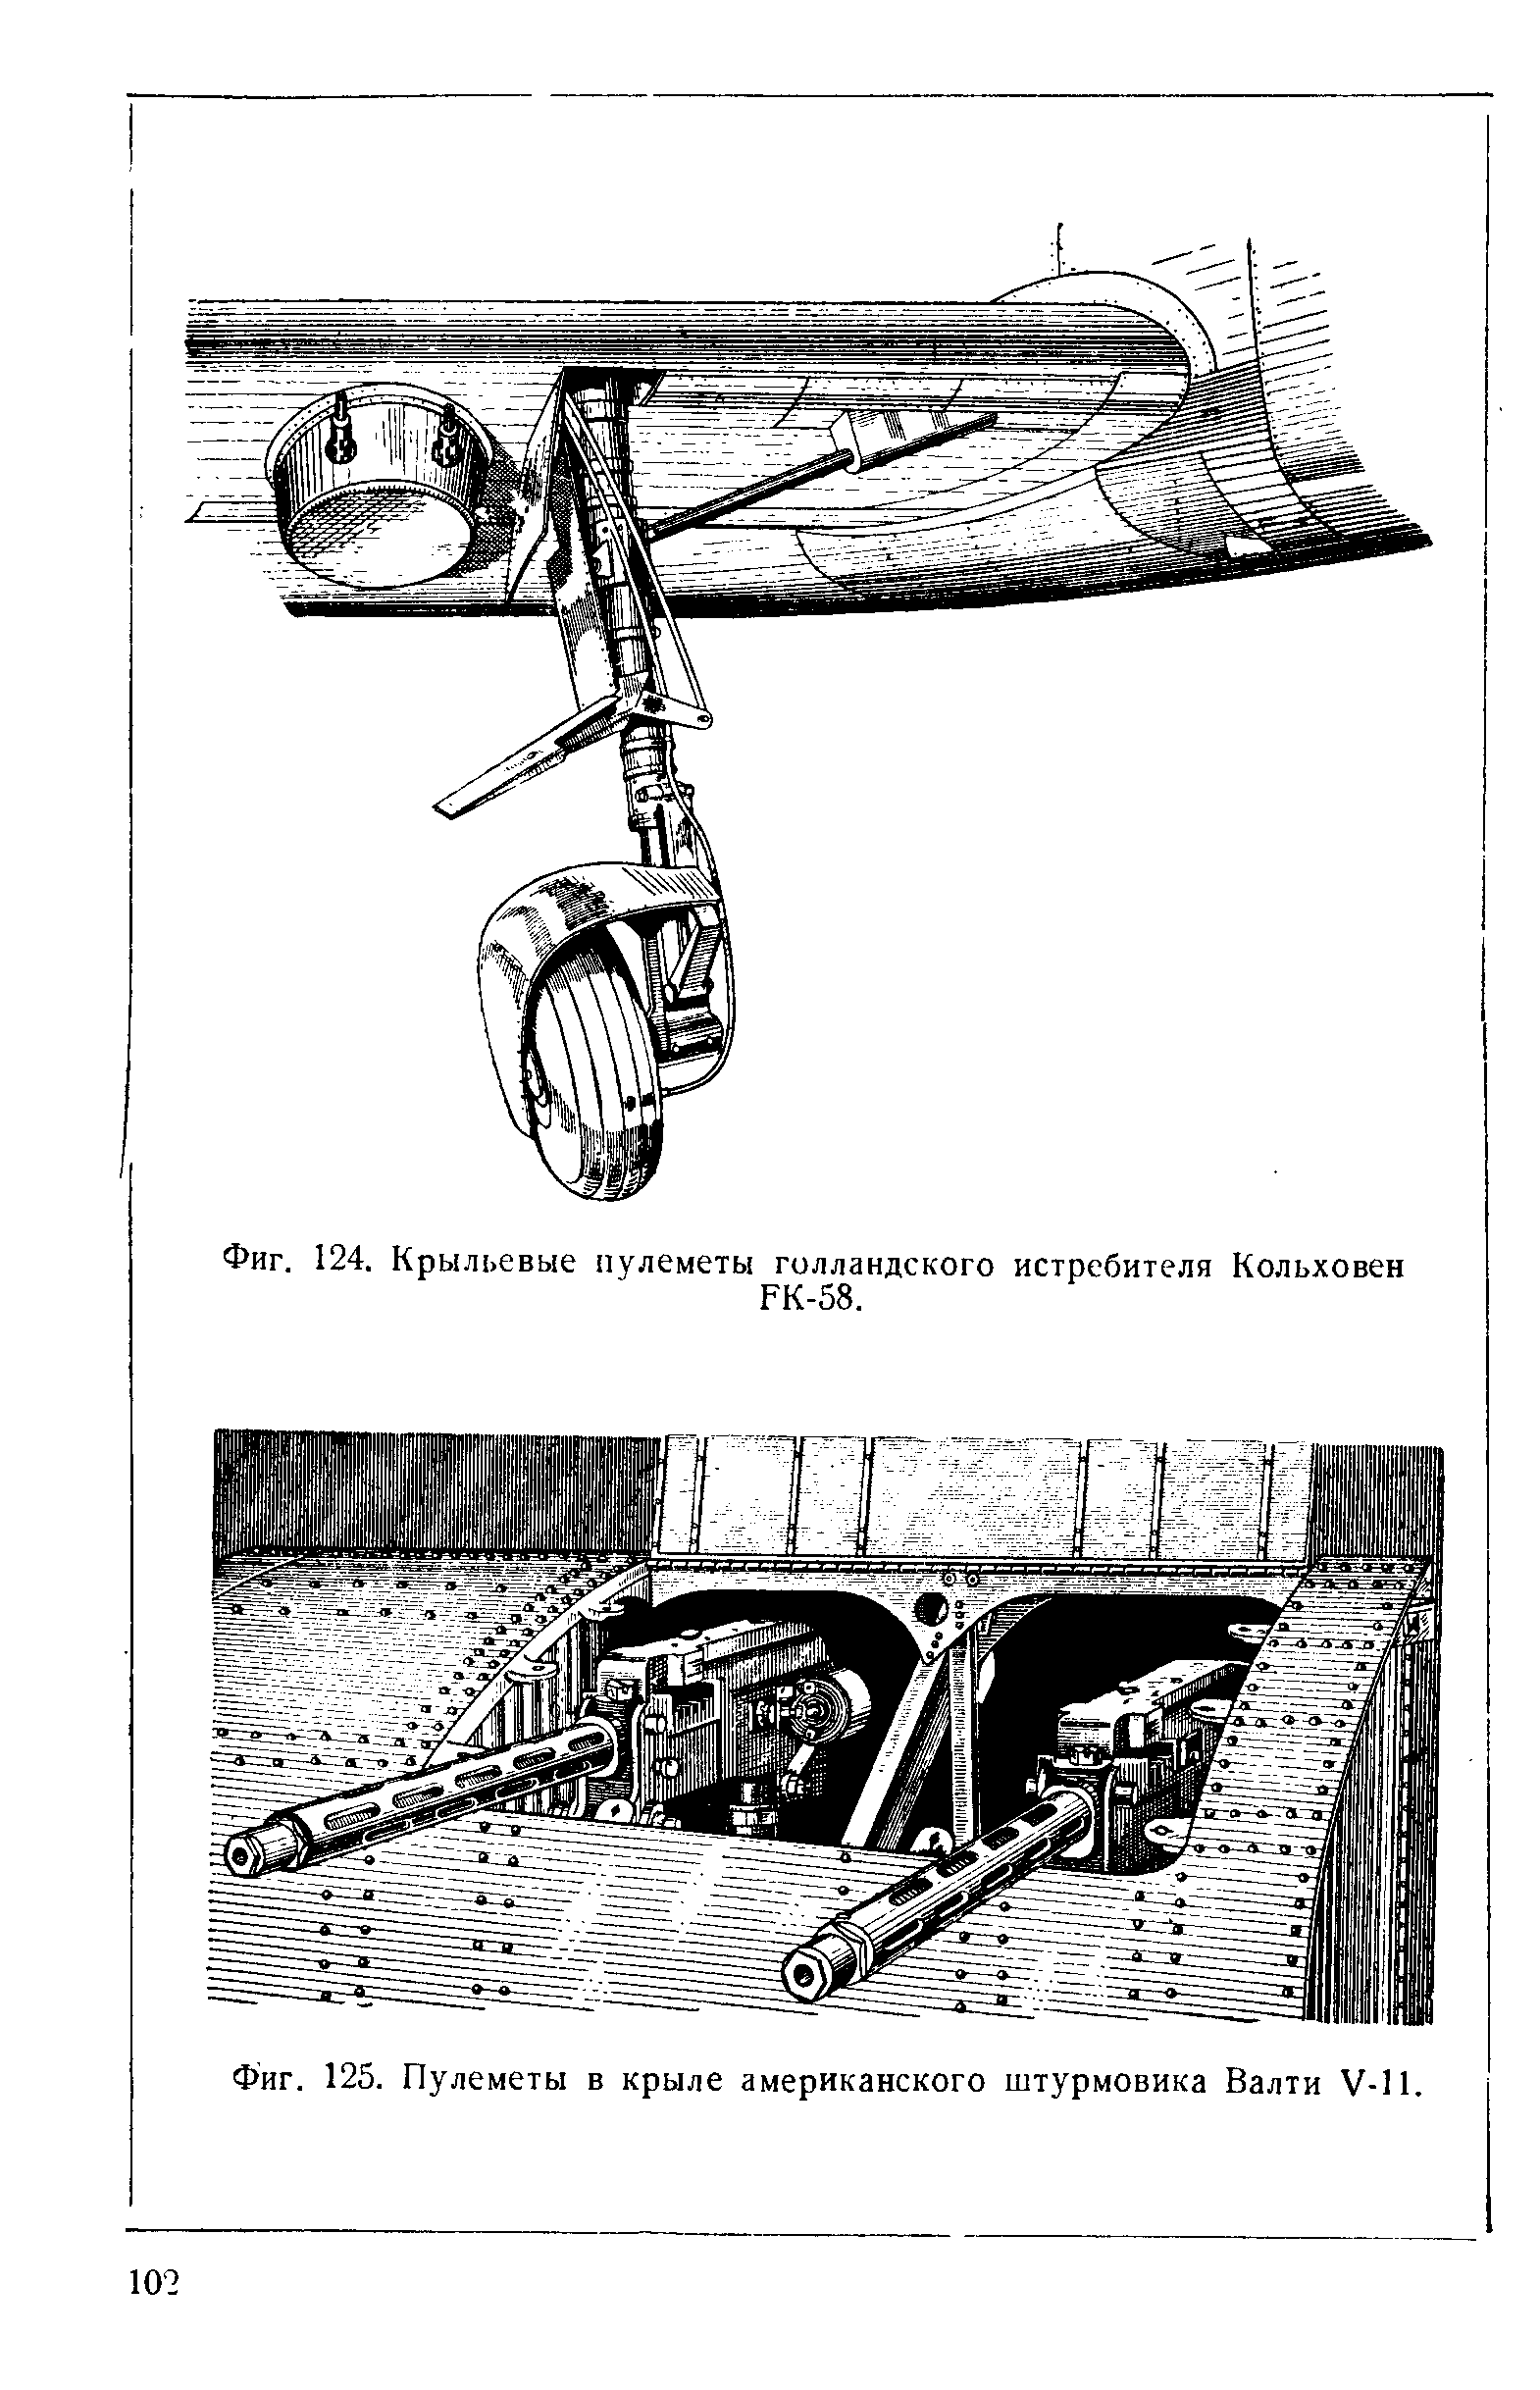 Фиг. 125. Пулеметы в крыле американского штурмовика Валти У-П.
